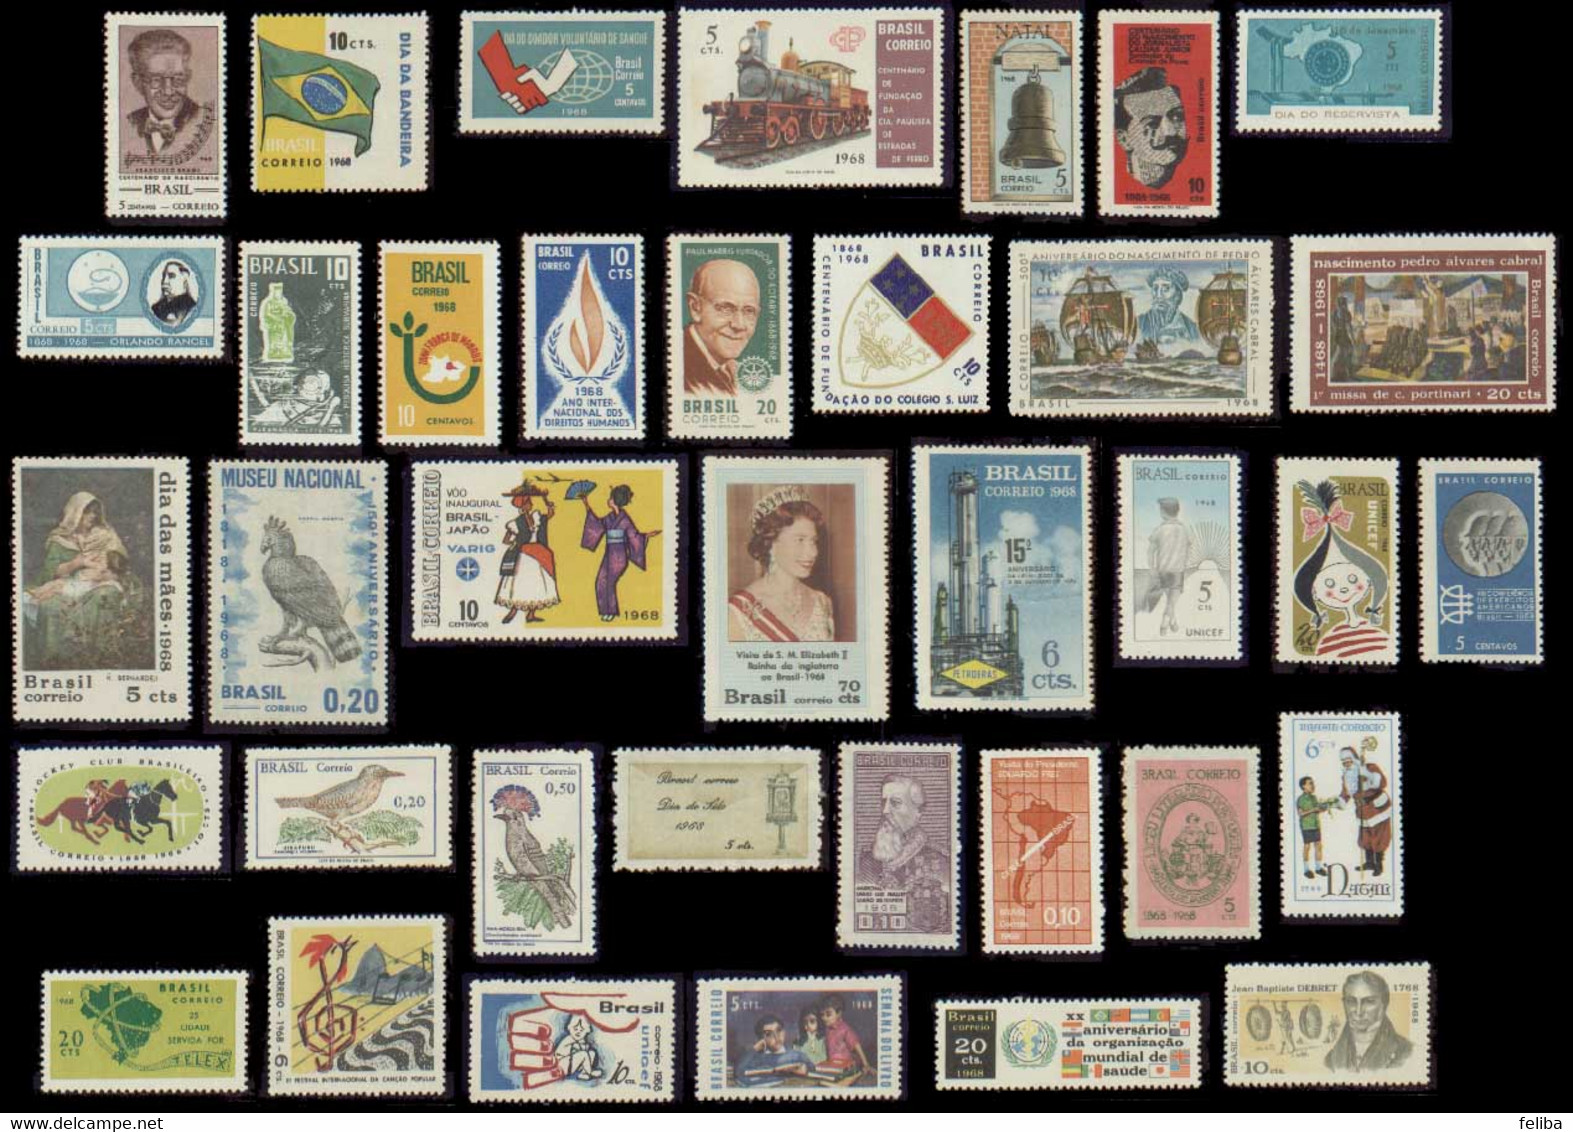 Brazil 1968 Unused Commemorative Stamps - Annate Complete